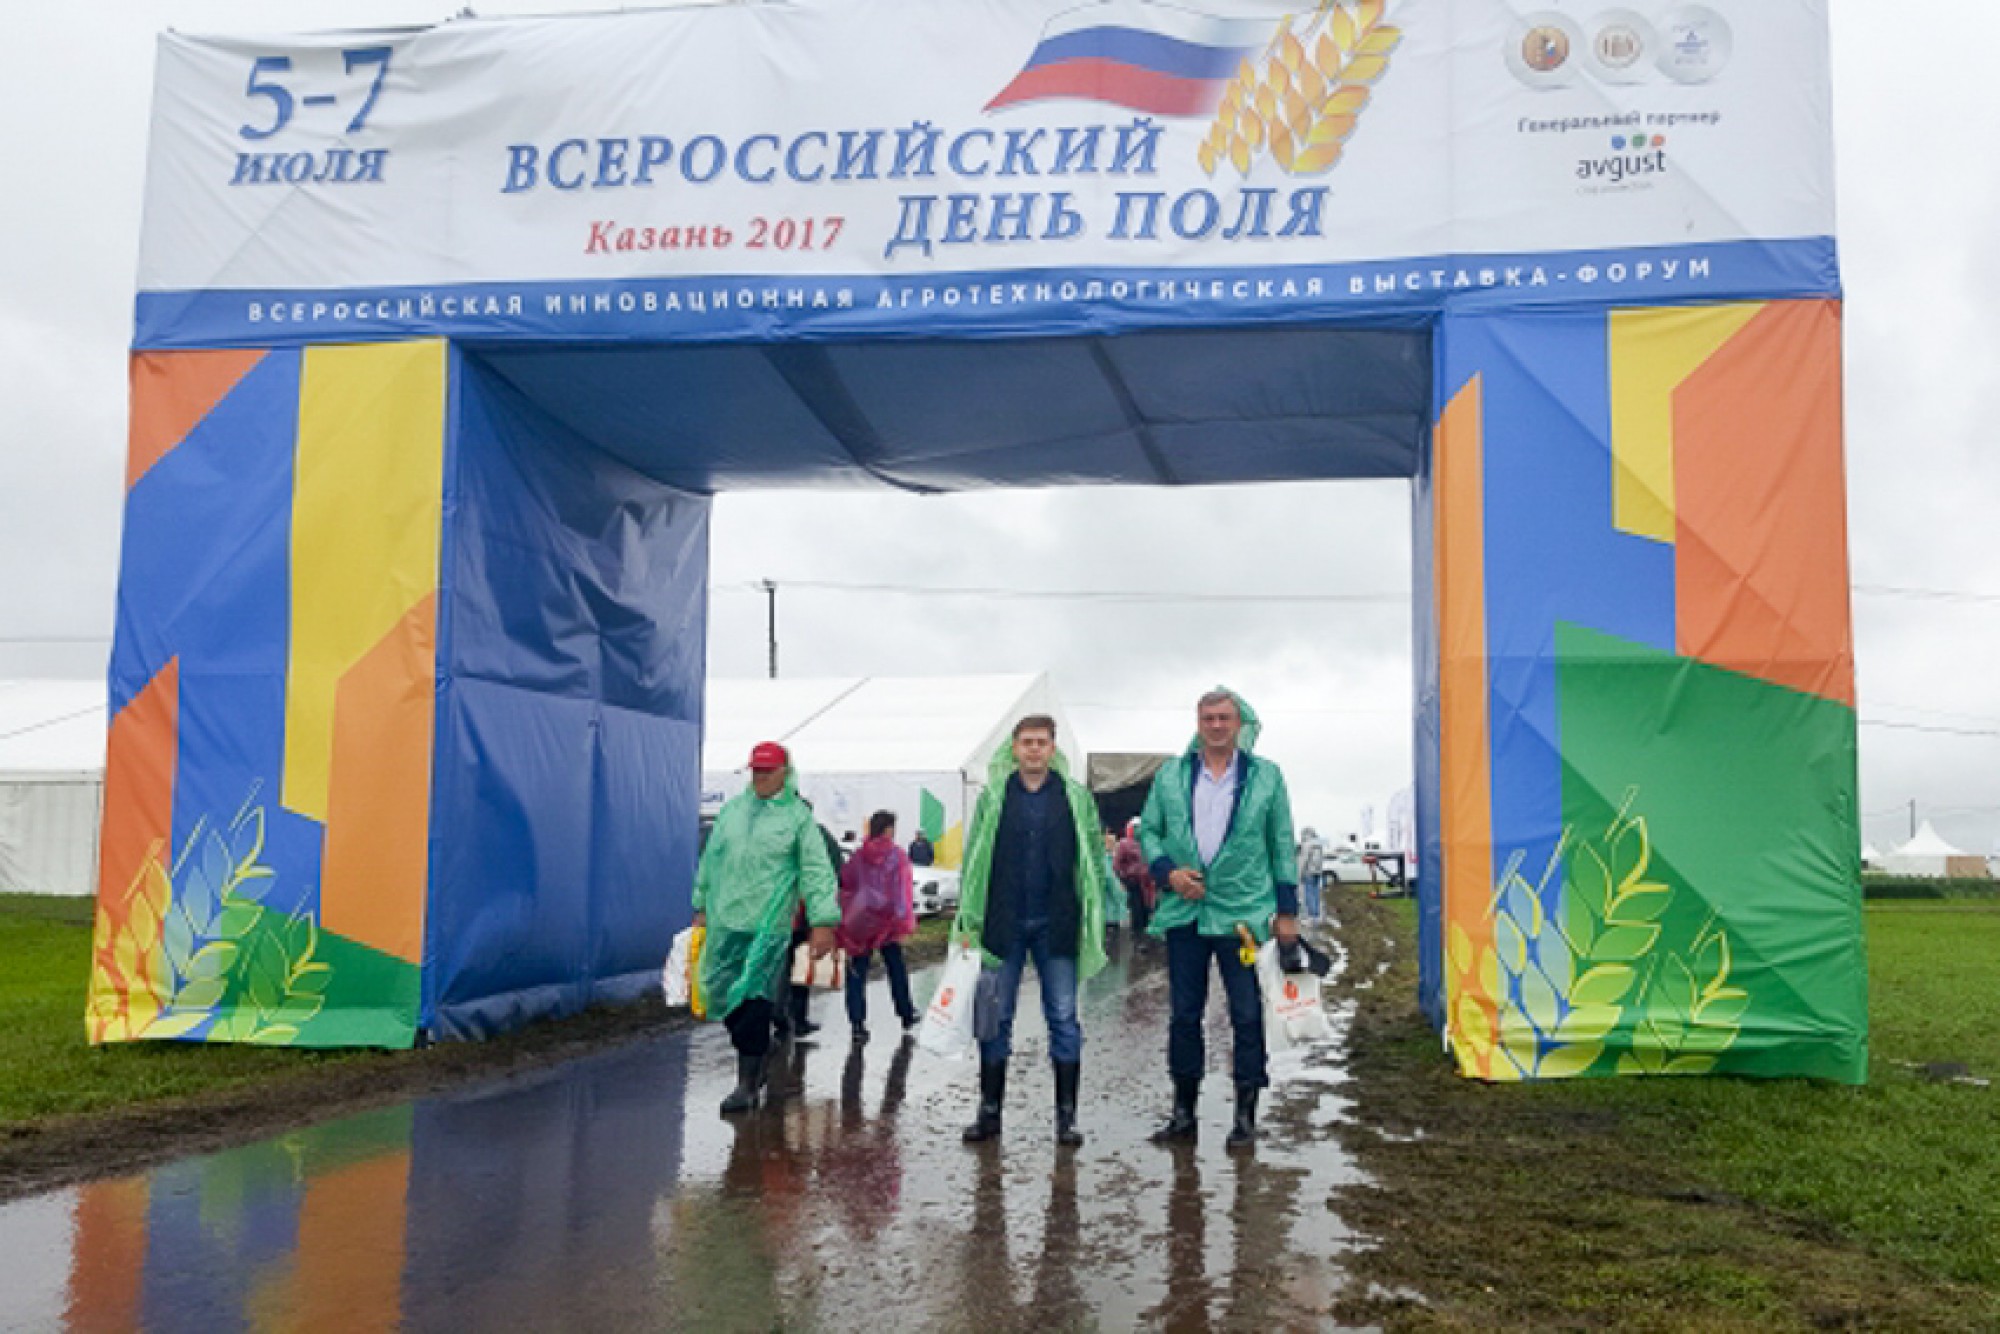 «Агро-Матик» принял участие в агротехнологической выставке «Всероссийский день поля — 2017» / Агро-Матик #9